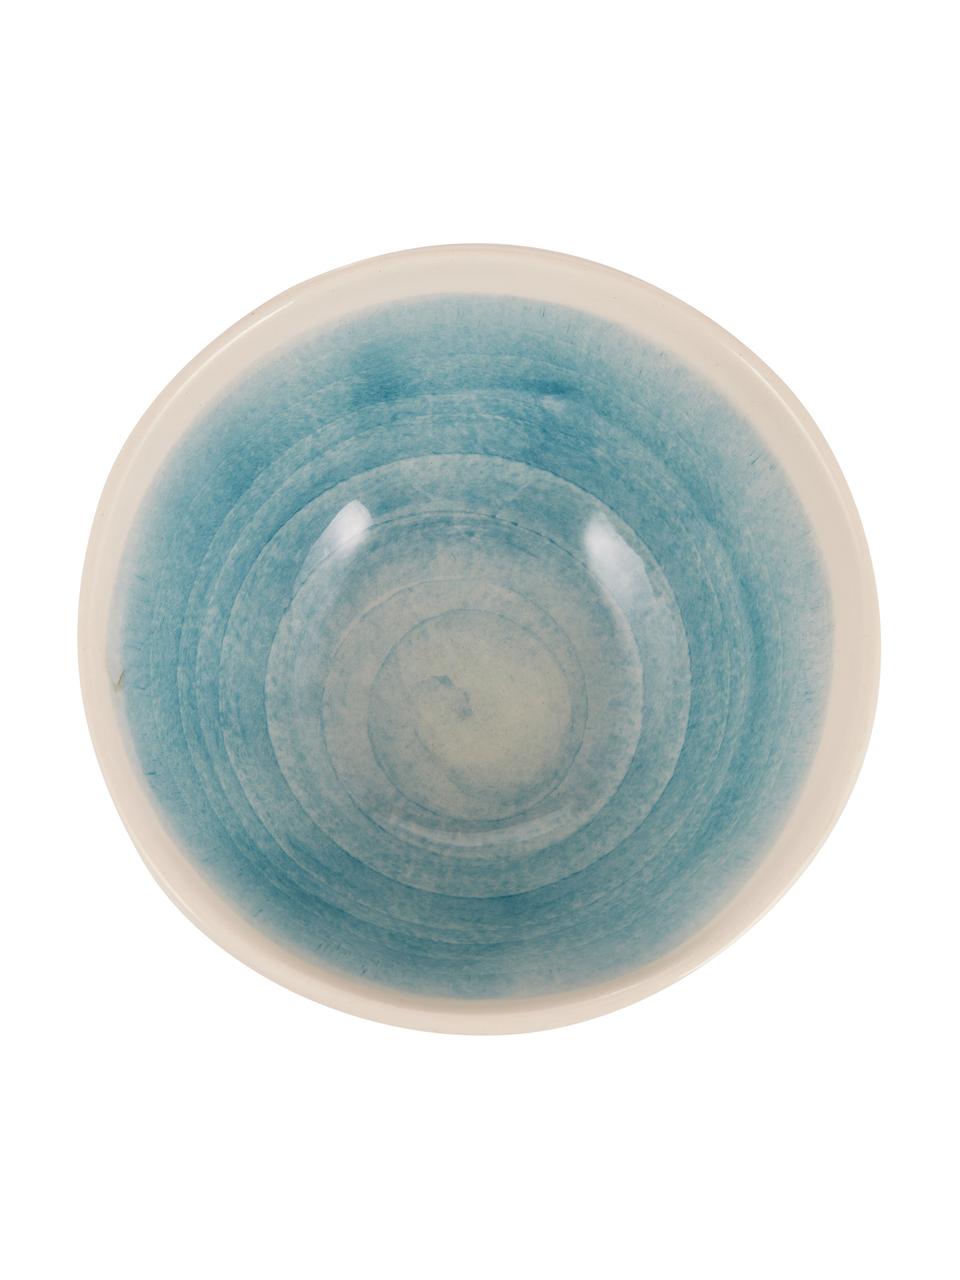 Ručně vyrobené misky s barevným přechodem Pure, 6 ks, Keramika, Modrá, bílá, Ø 16 cm